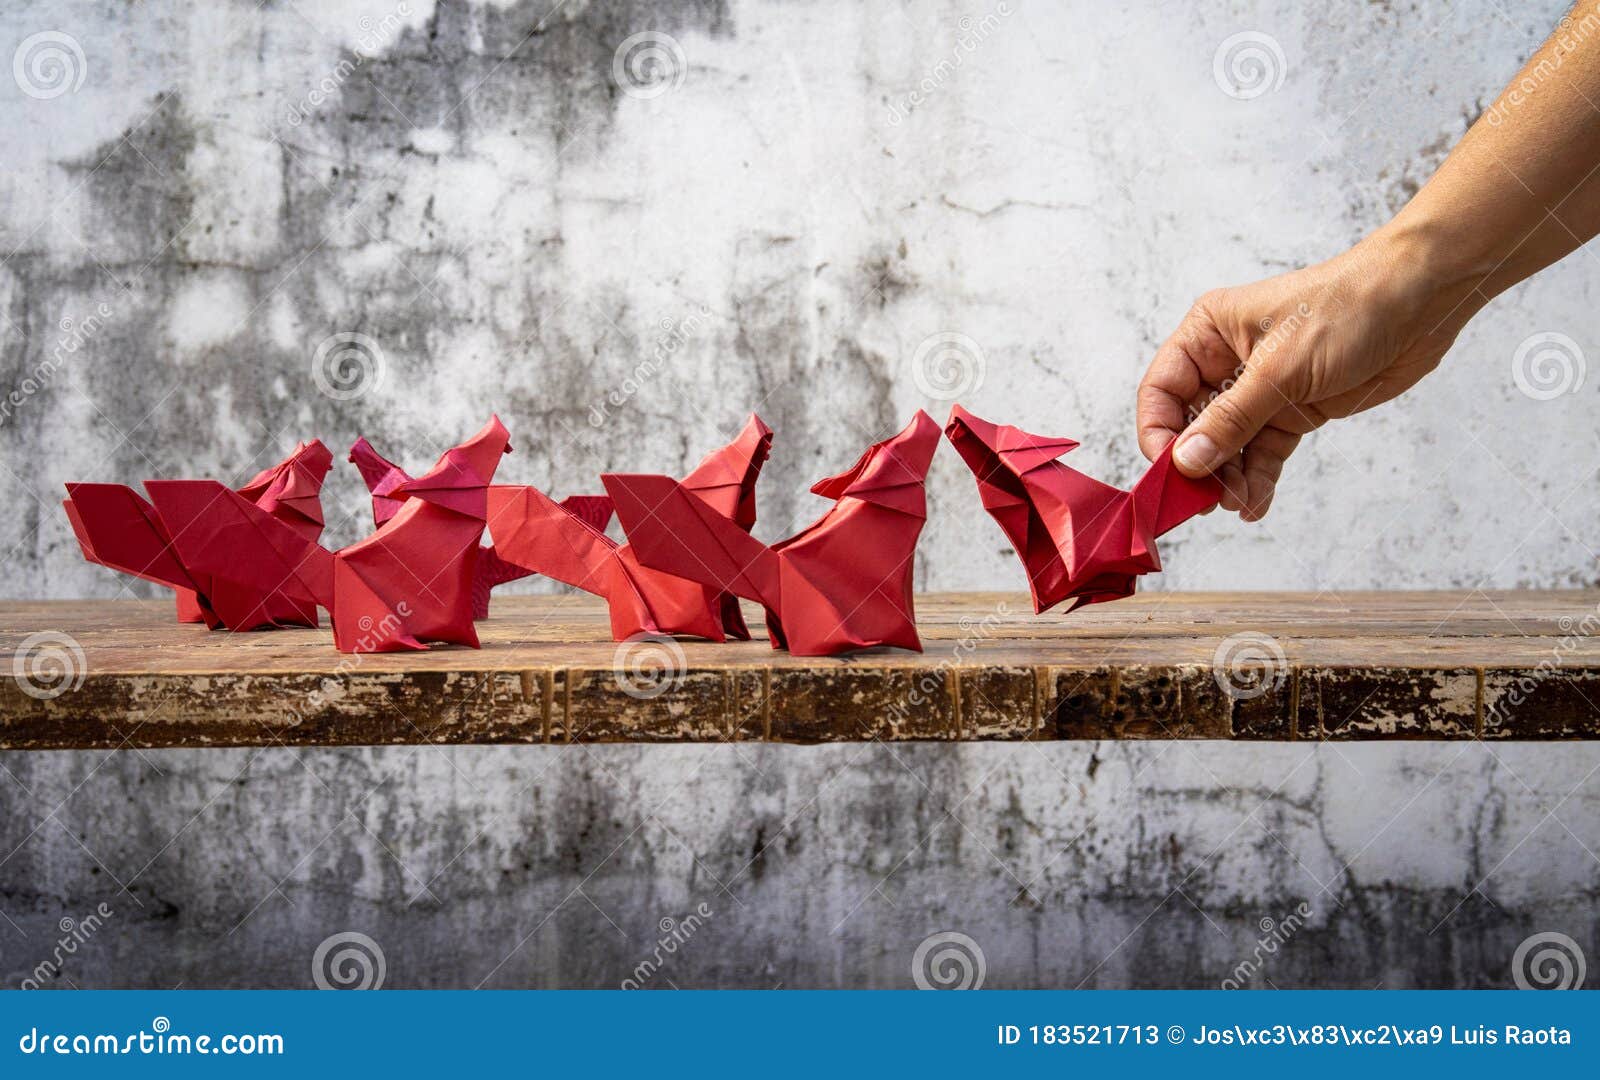 Sí misma Empleador salón Origami De Ori Significa Plegado Y Kami Significa Papel Es El Arte Del  Plegado De Papel Imagen de archivo - Imagen de concepto, oriental: 183521713